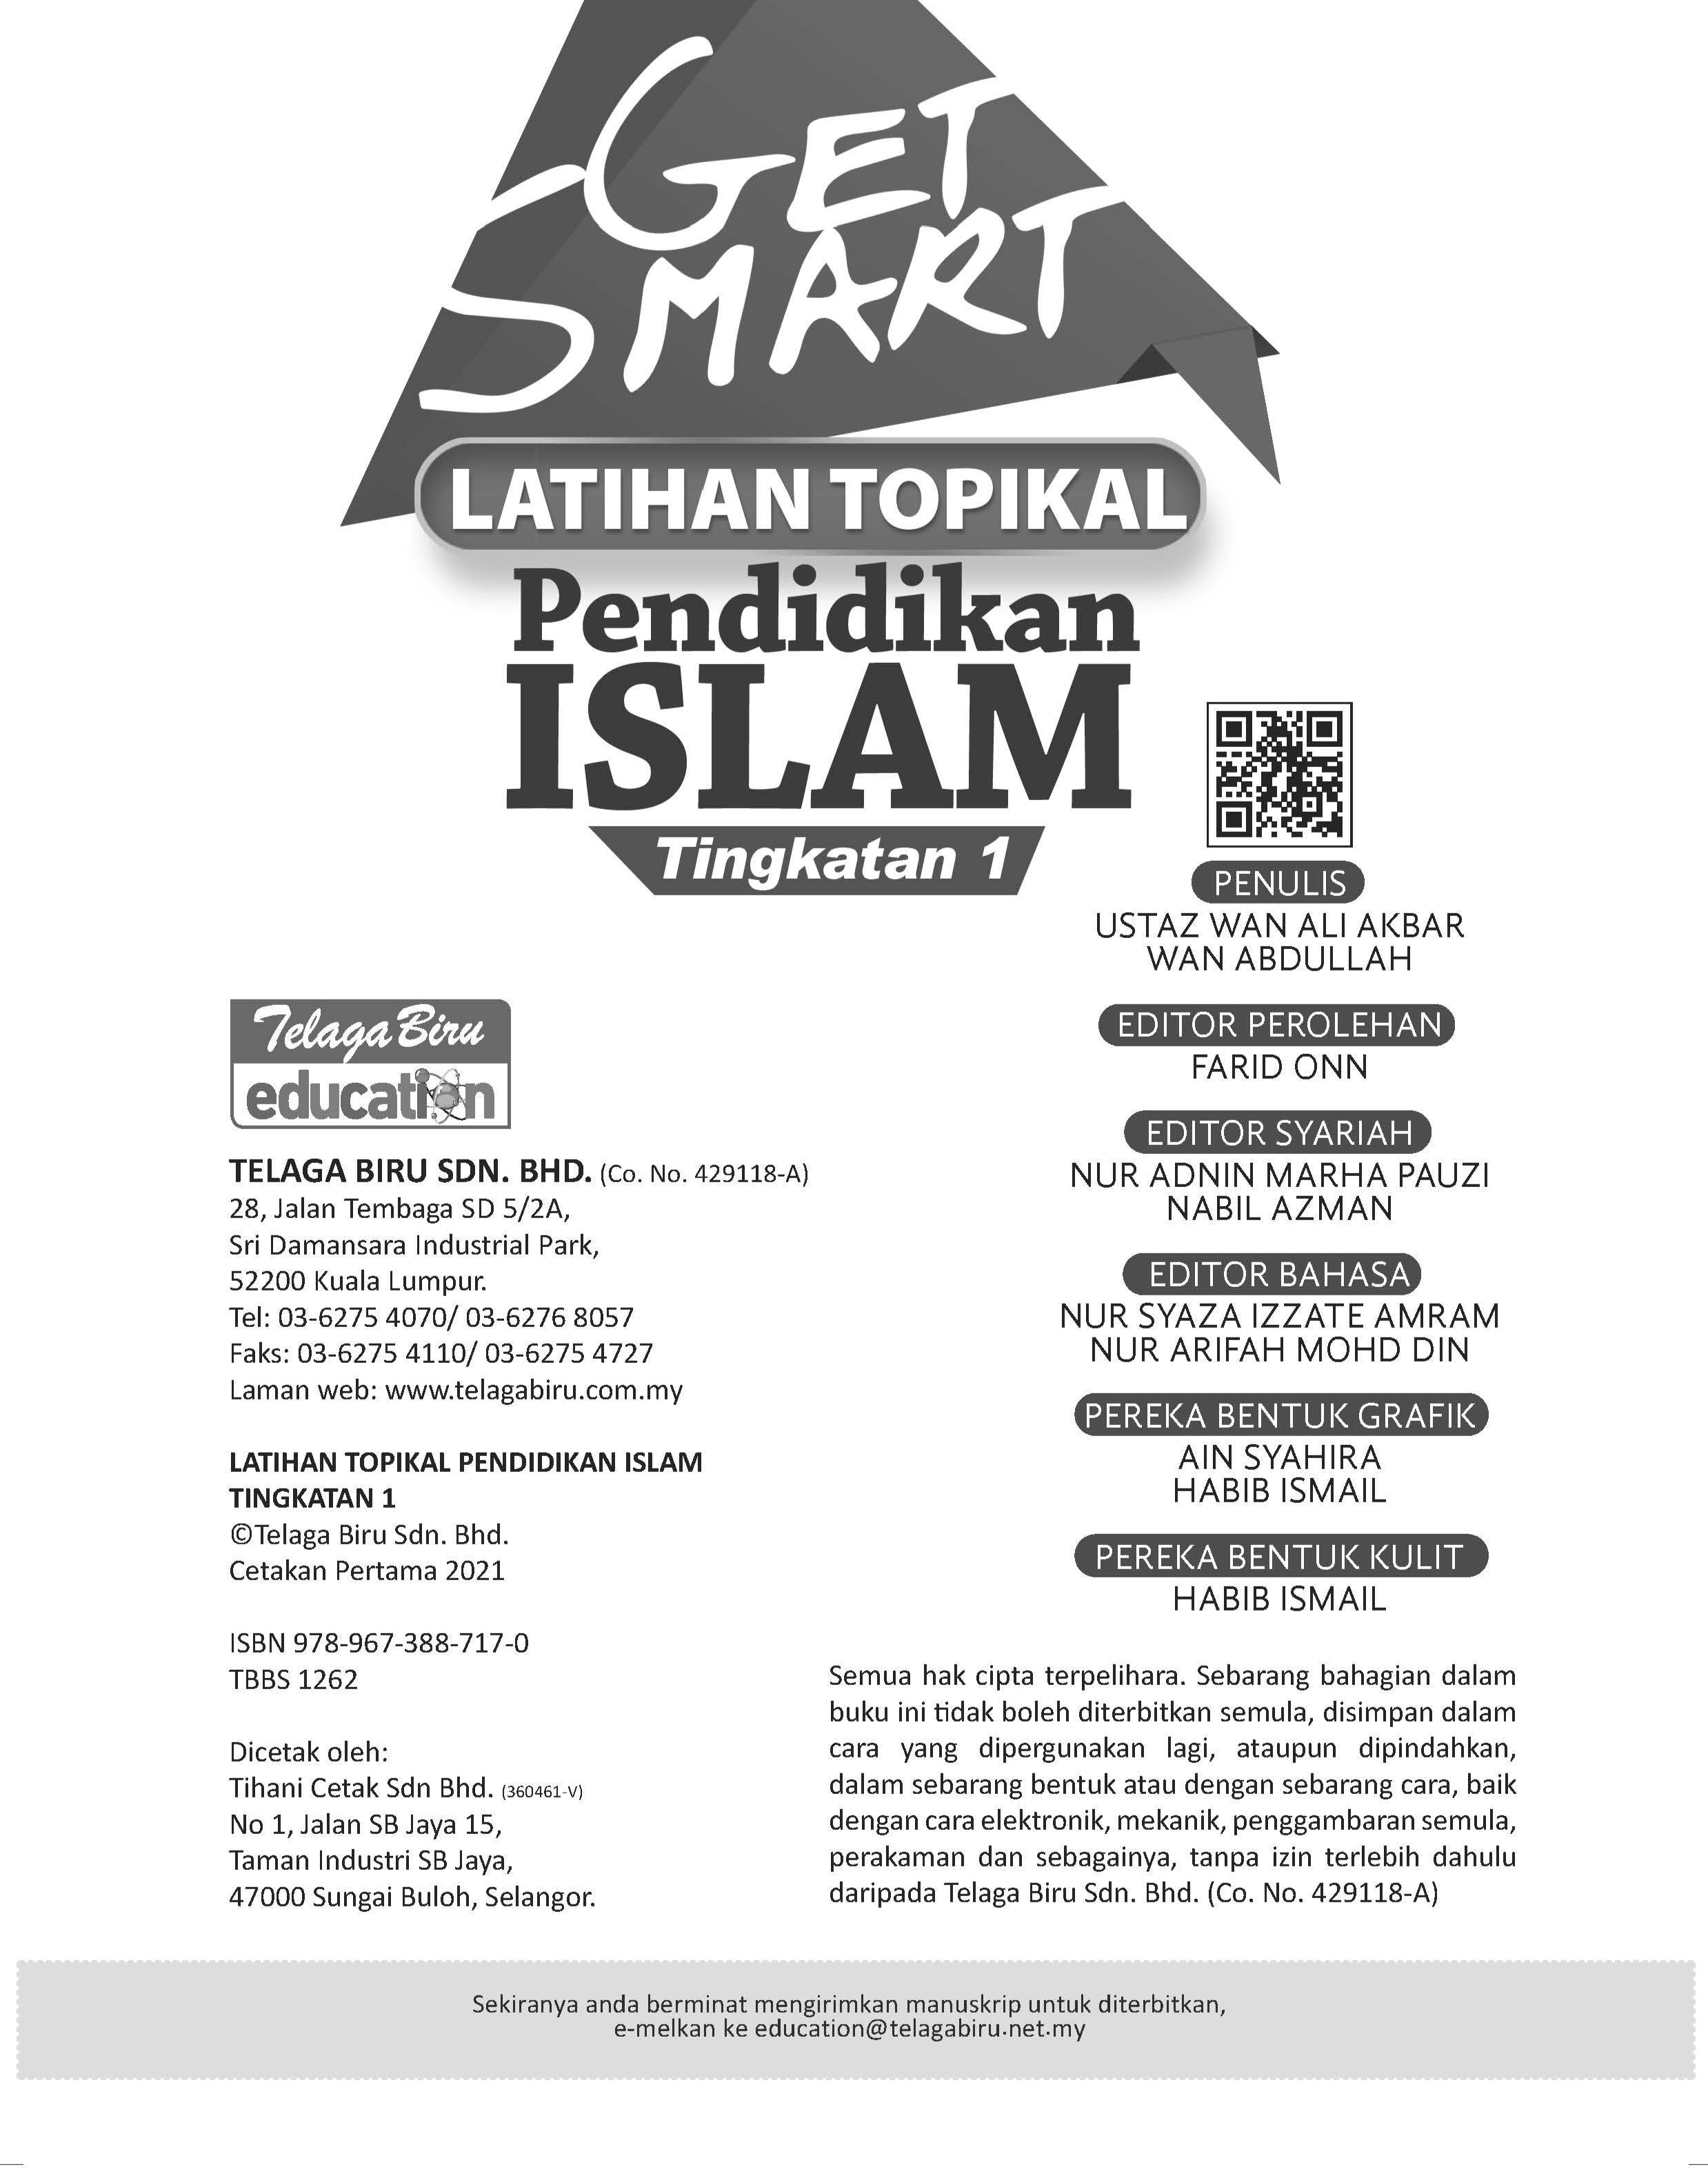 Get Smart - Latihan Topikal Pendidikan Islam Tingkatan 1 - (TBBS1262)